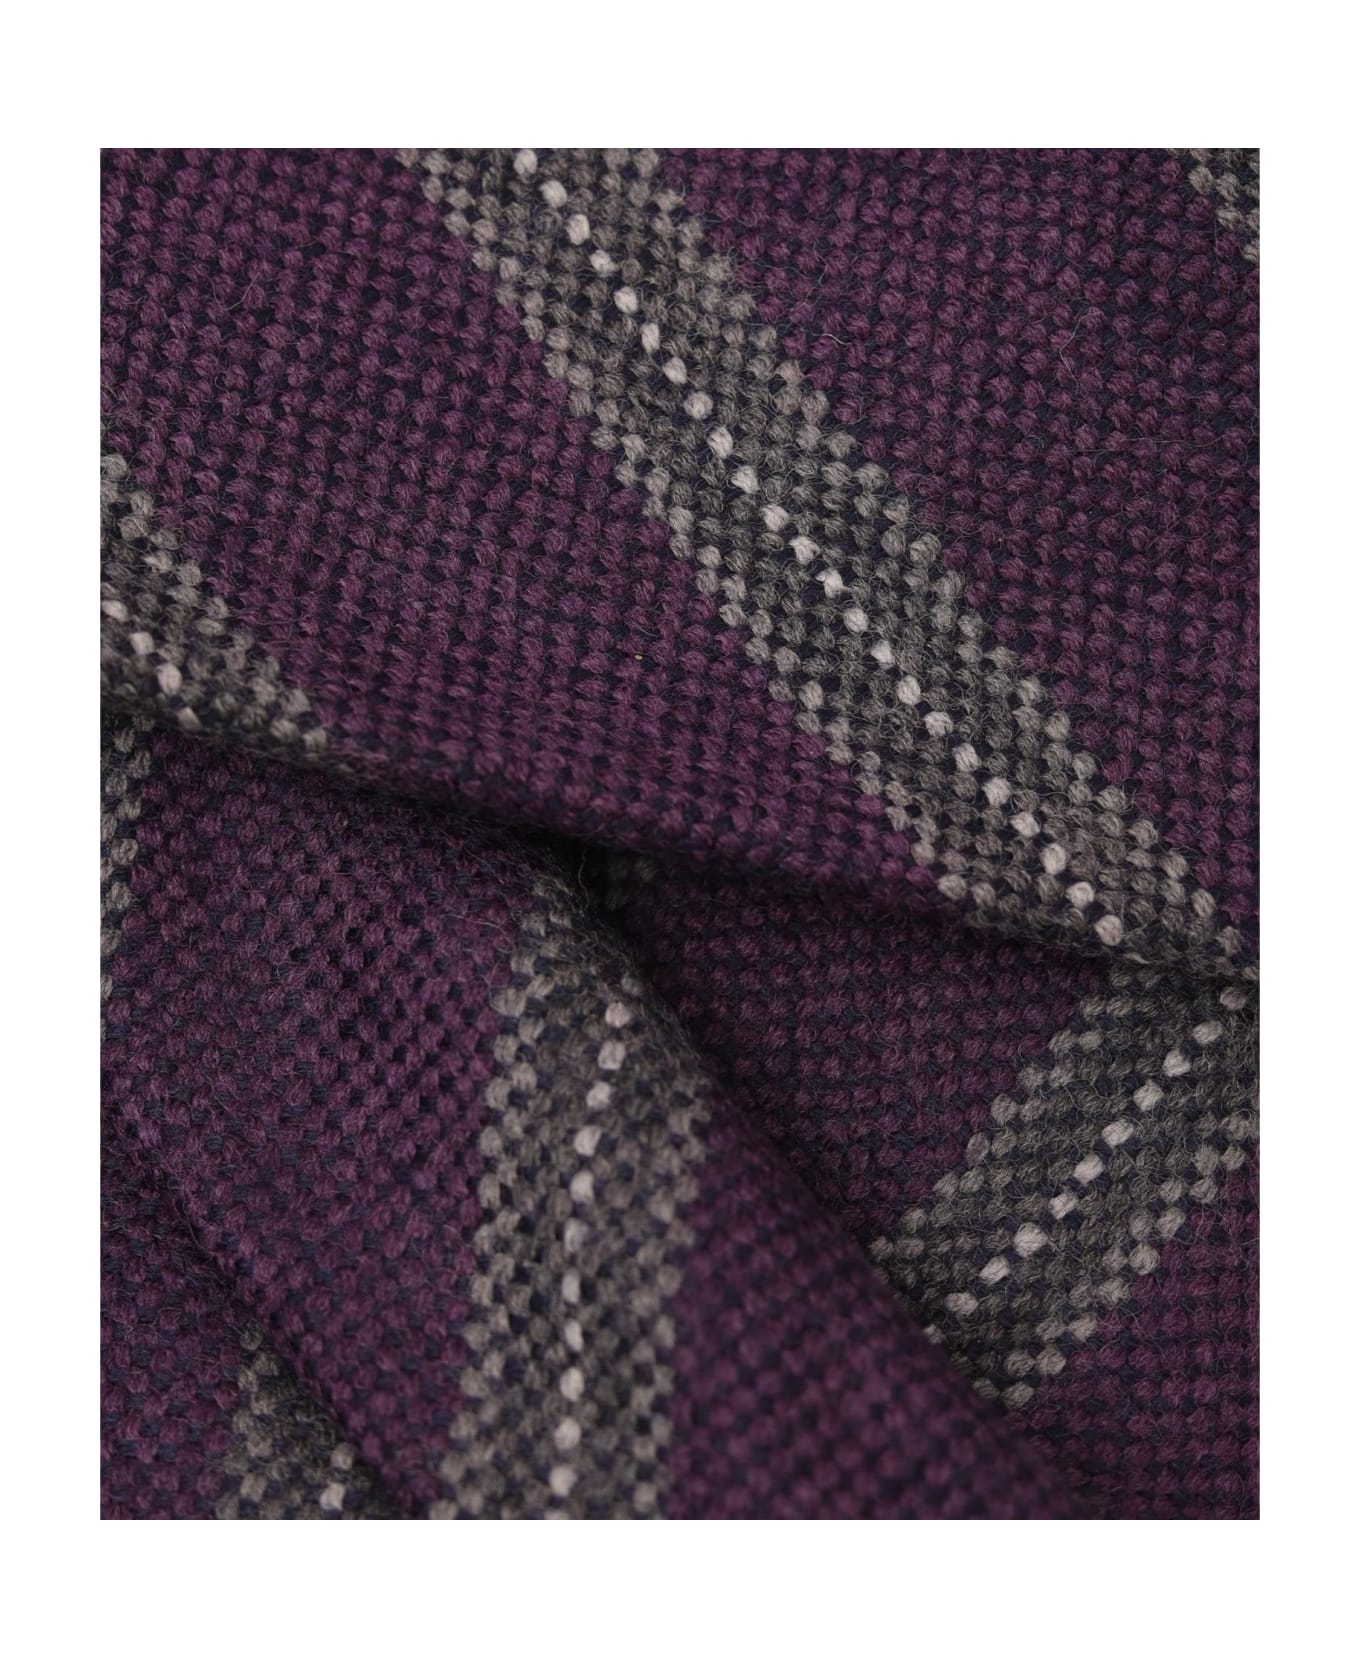 Larusmiani Tie 'porta Nuova' Tie - Purple